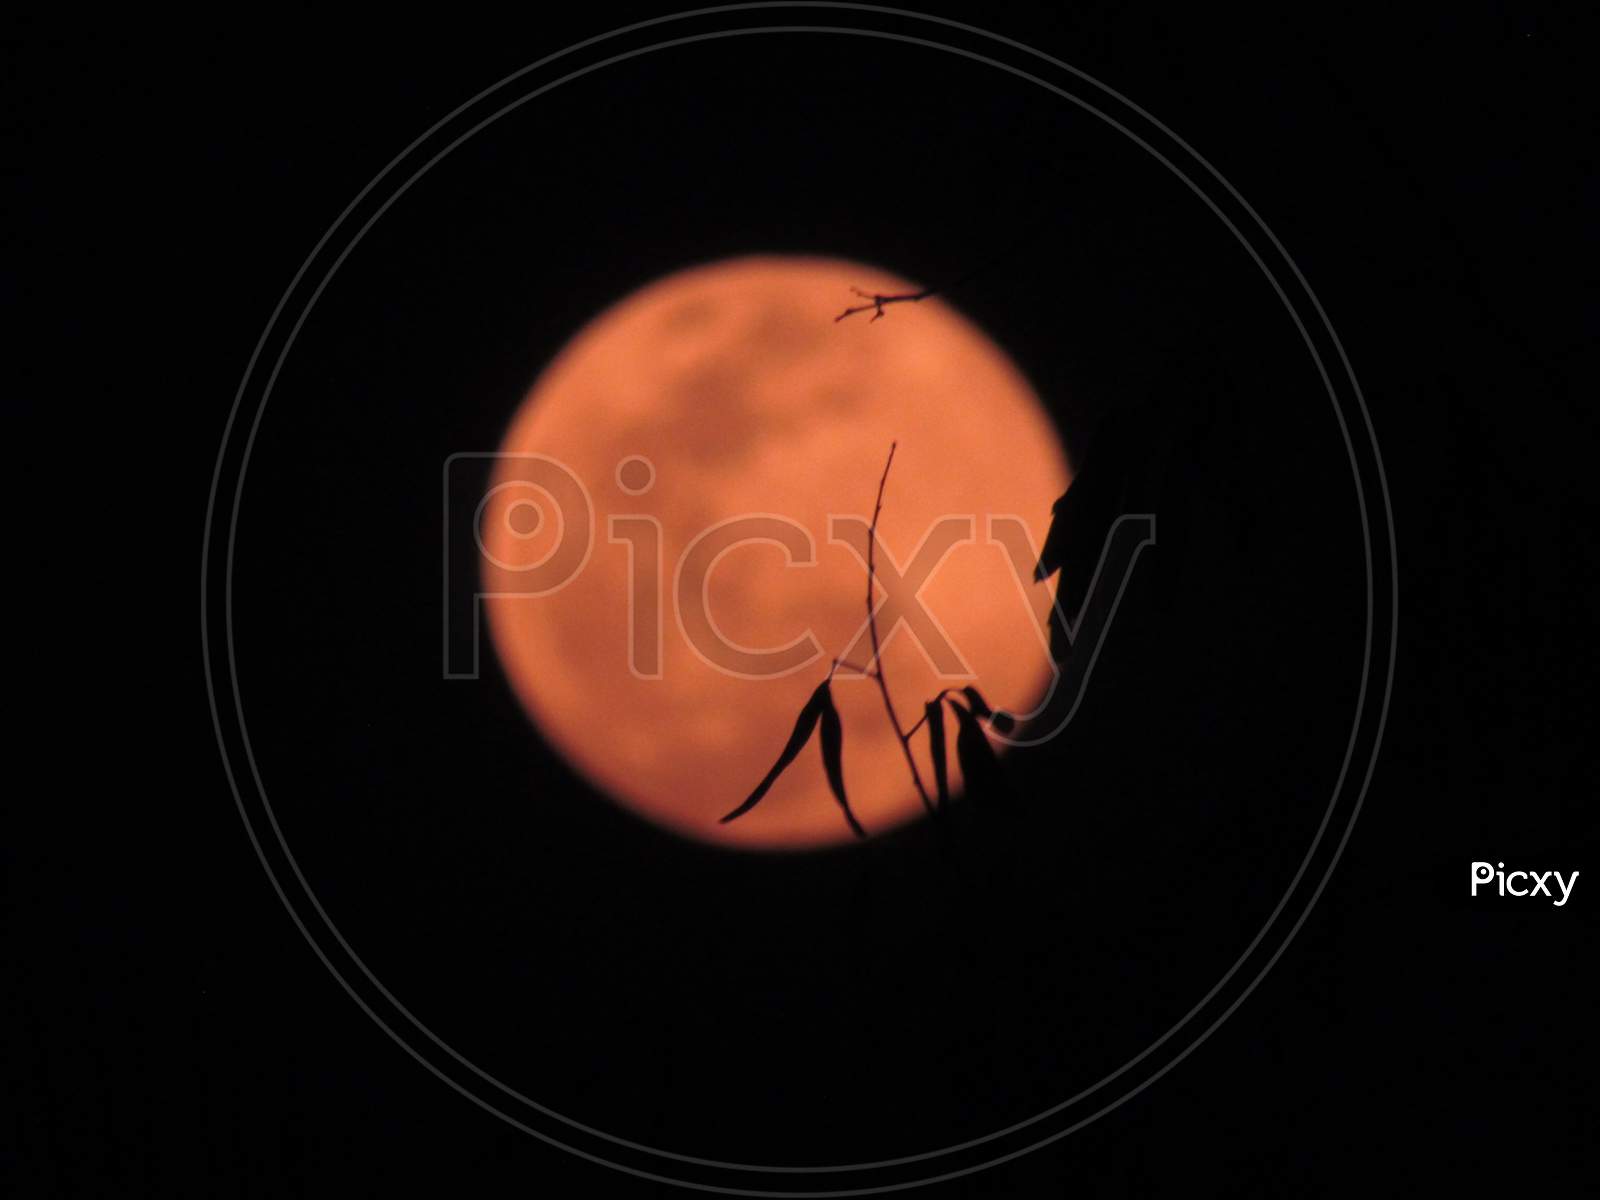 Orange moon